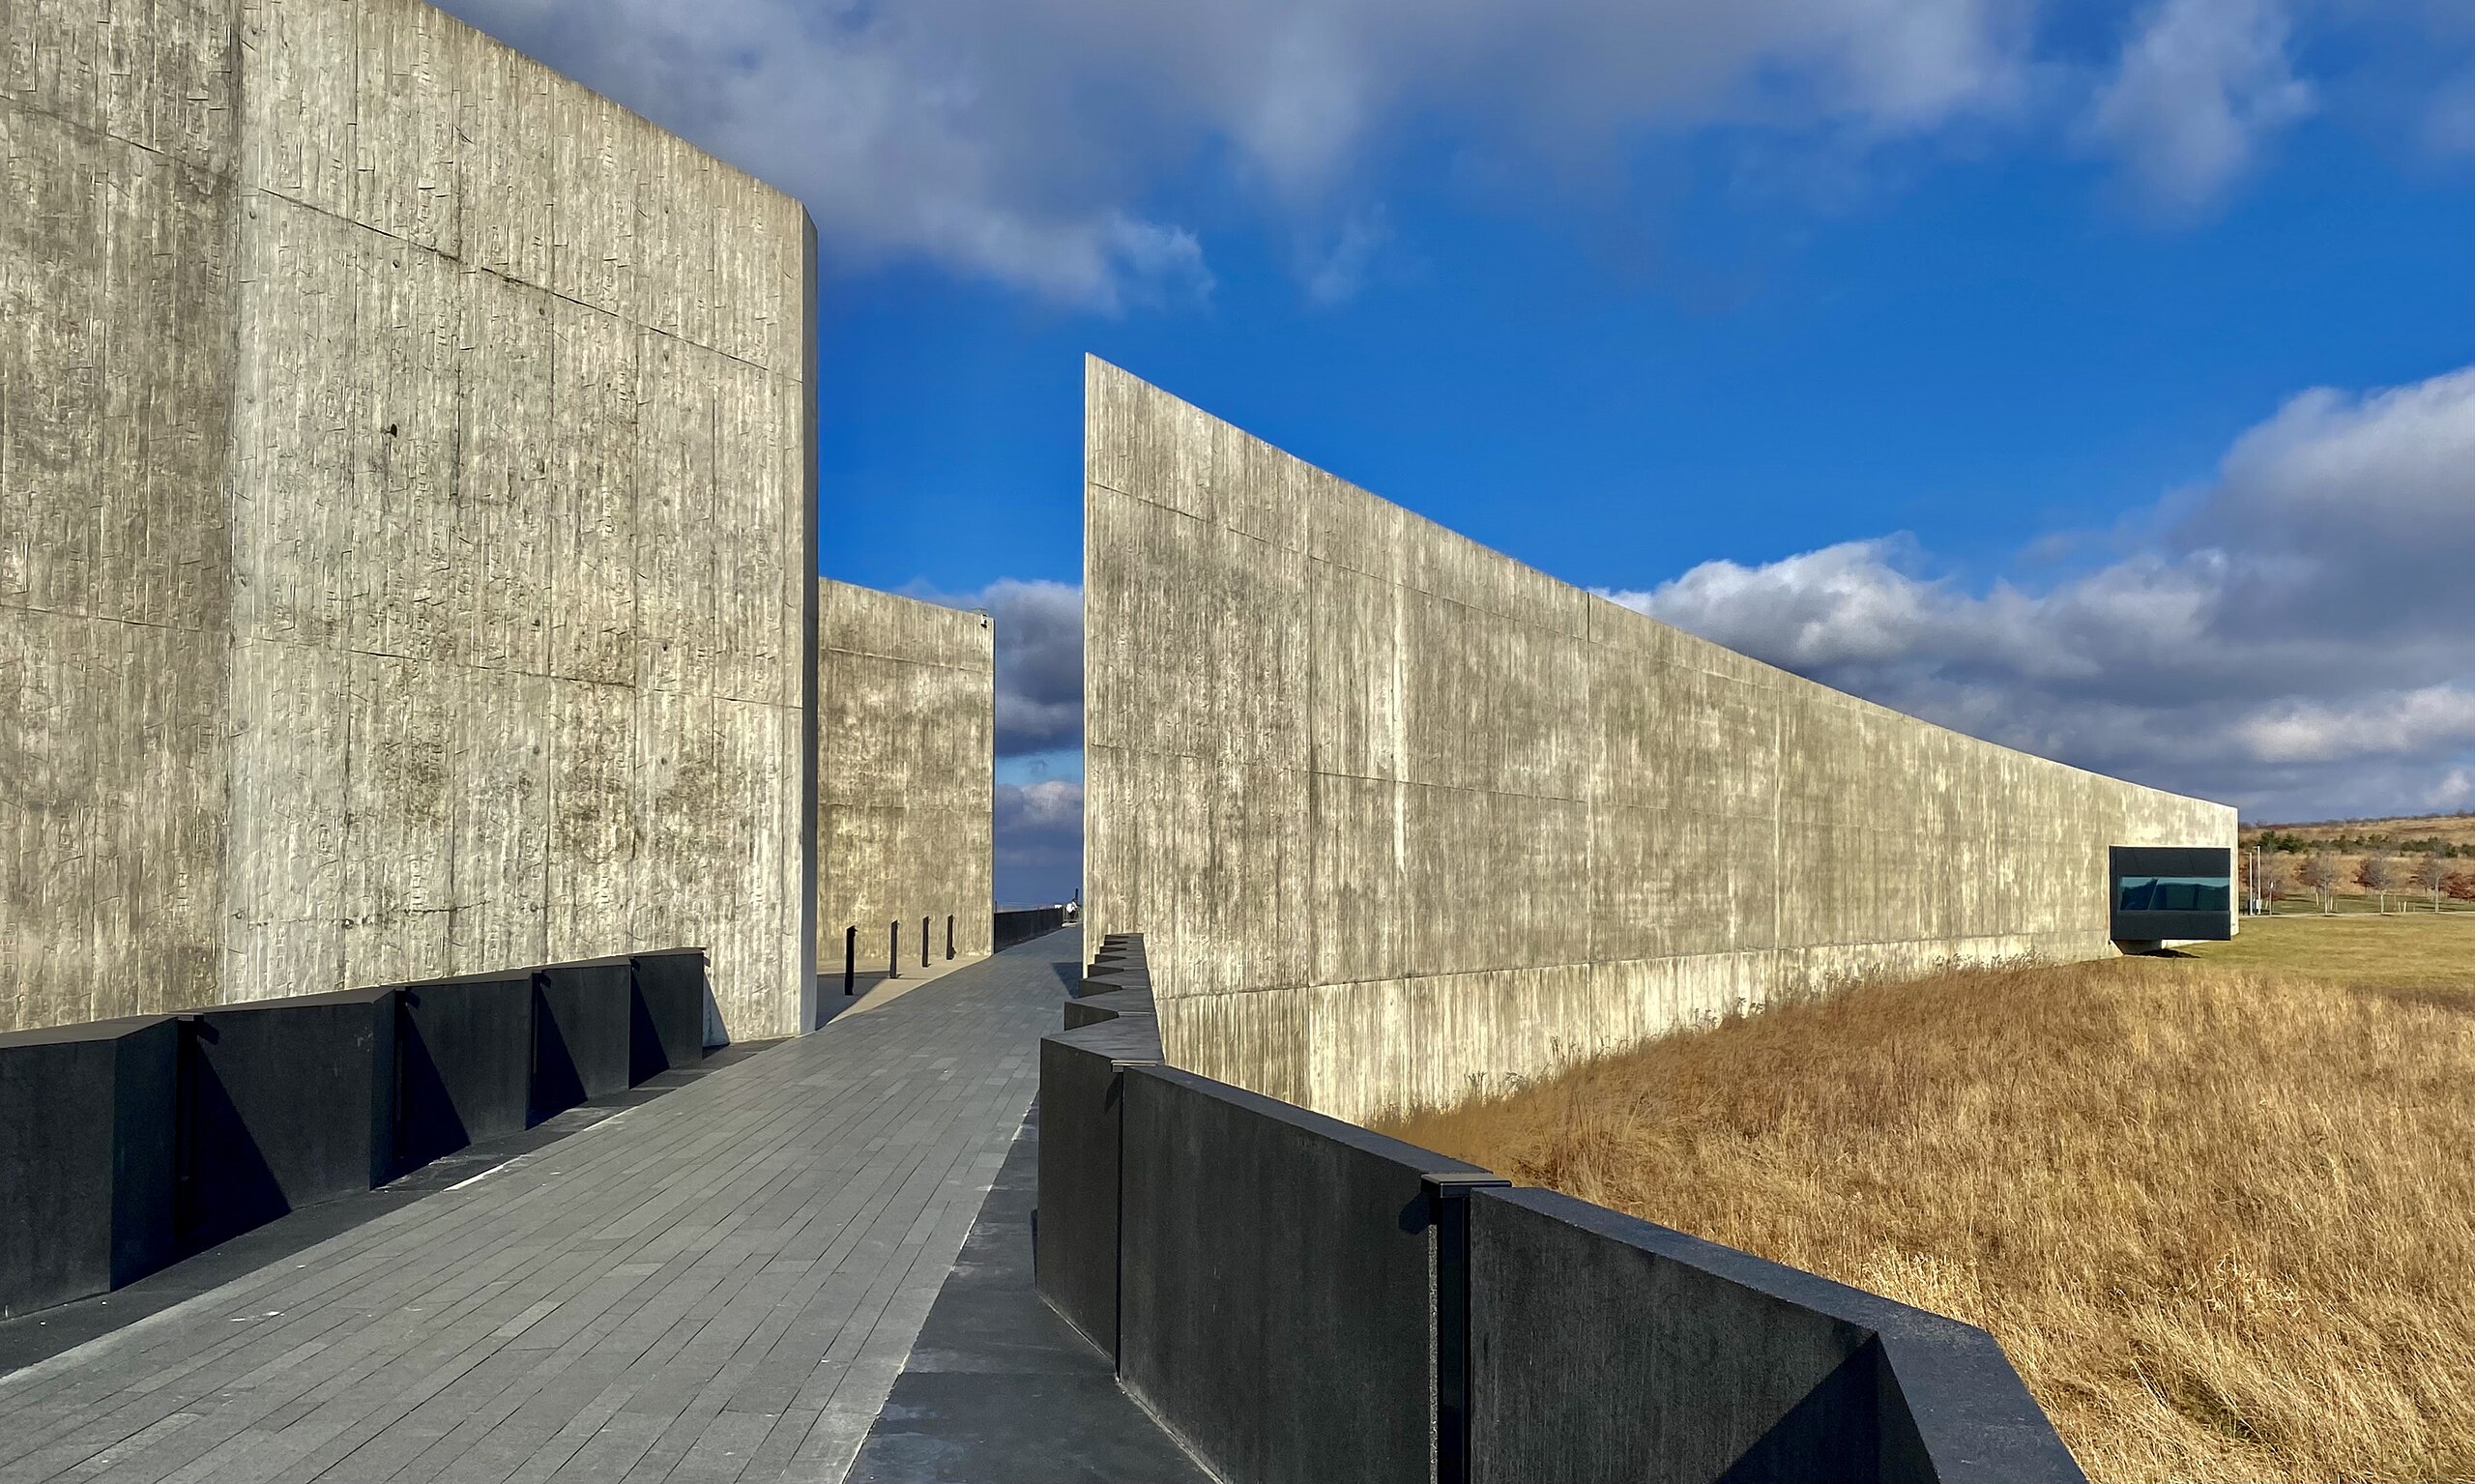 flight 93 memorial wall